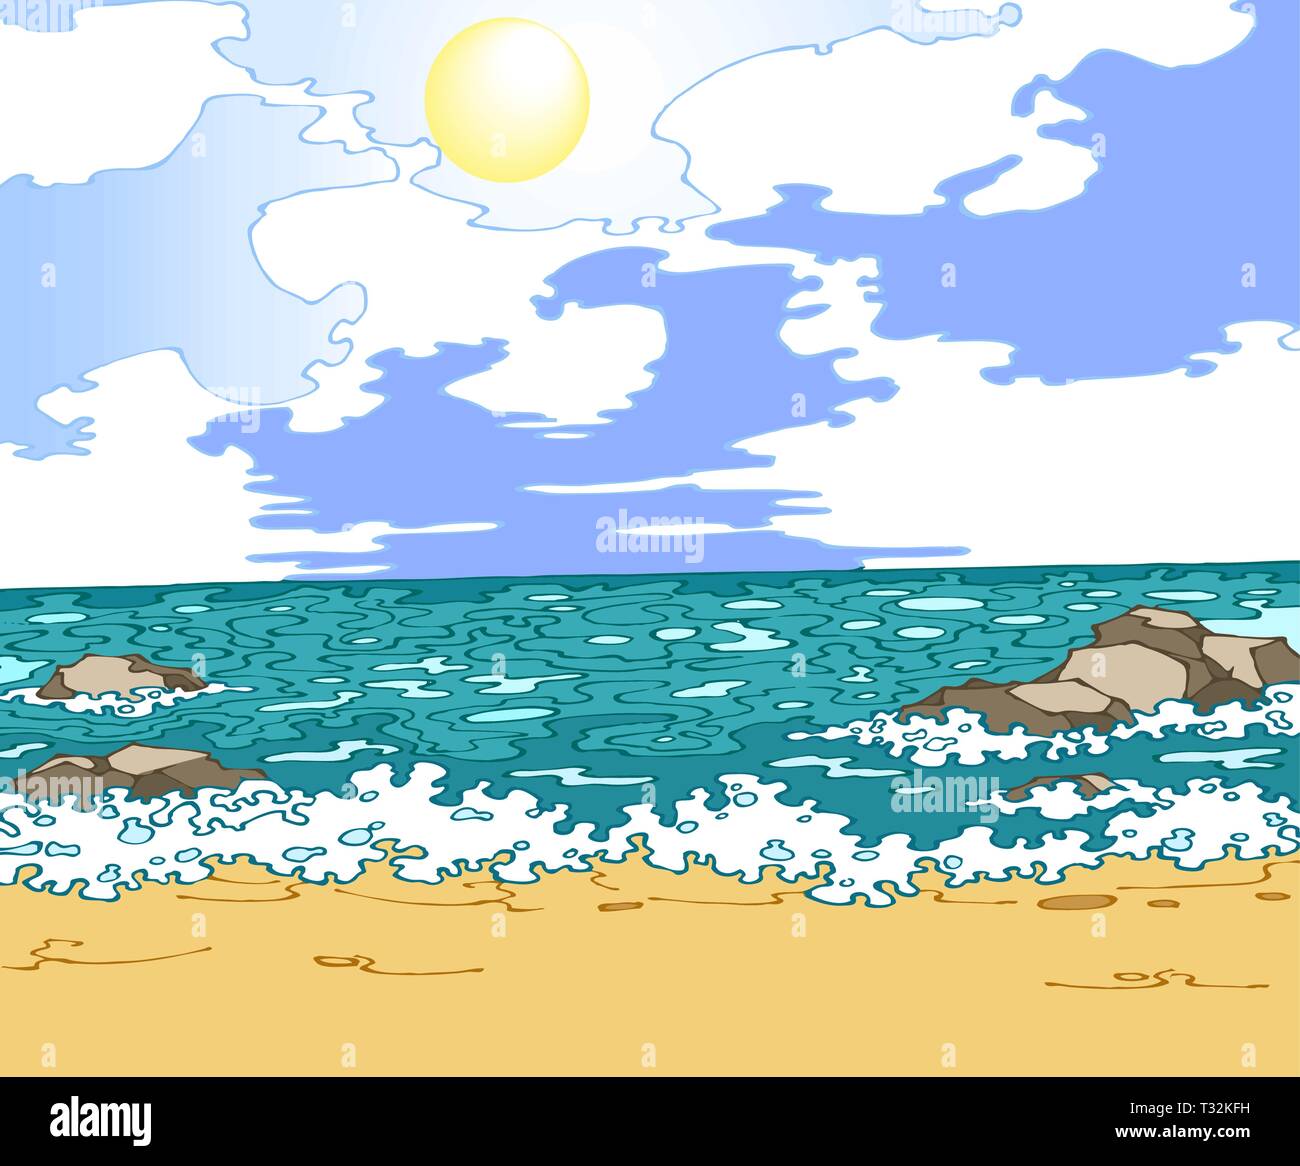 Illustrazione Vettoriale seascape con spiaggia di sabbia gialla e il cielo sereno con nuvole bianche. Illustrazione Vettoriale